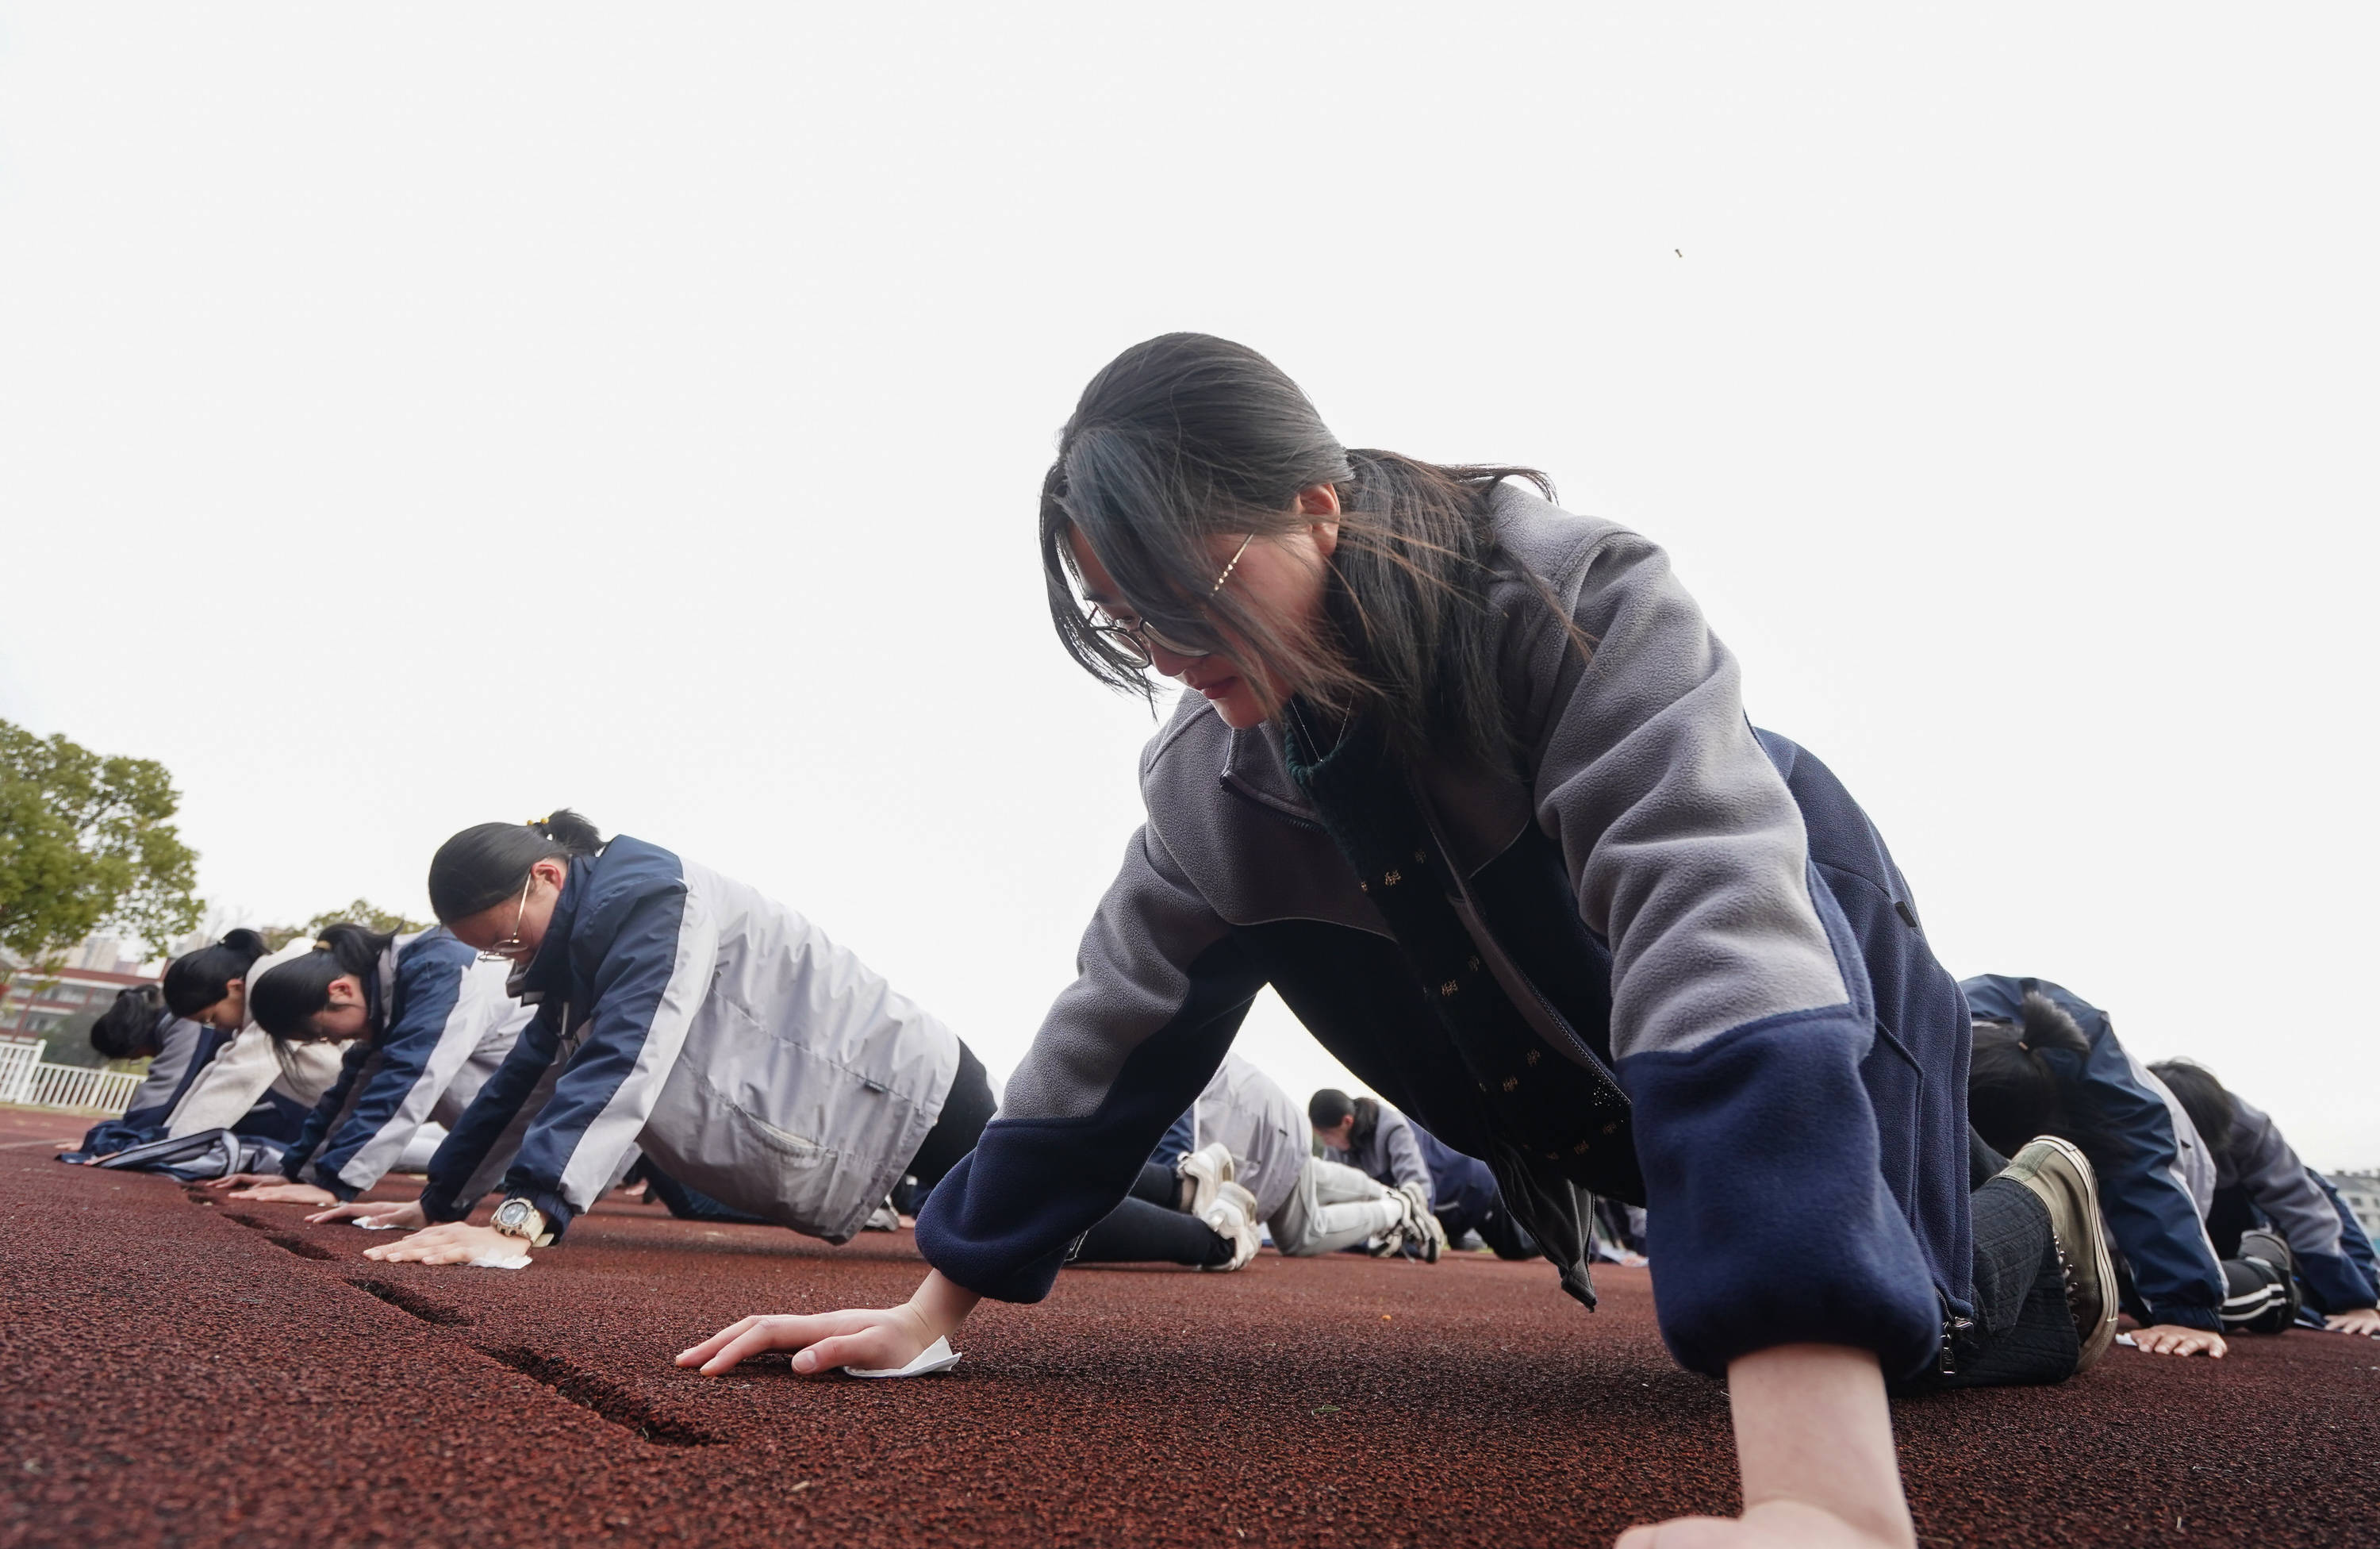 江苏锡山高中:天天一节体育课 每天锻炼一小时